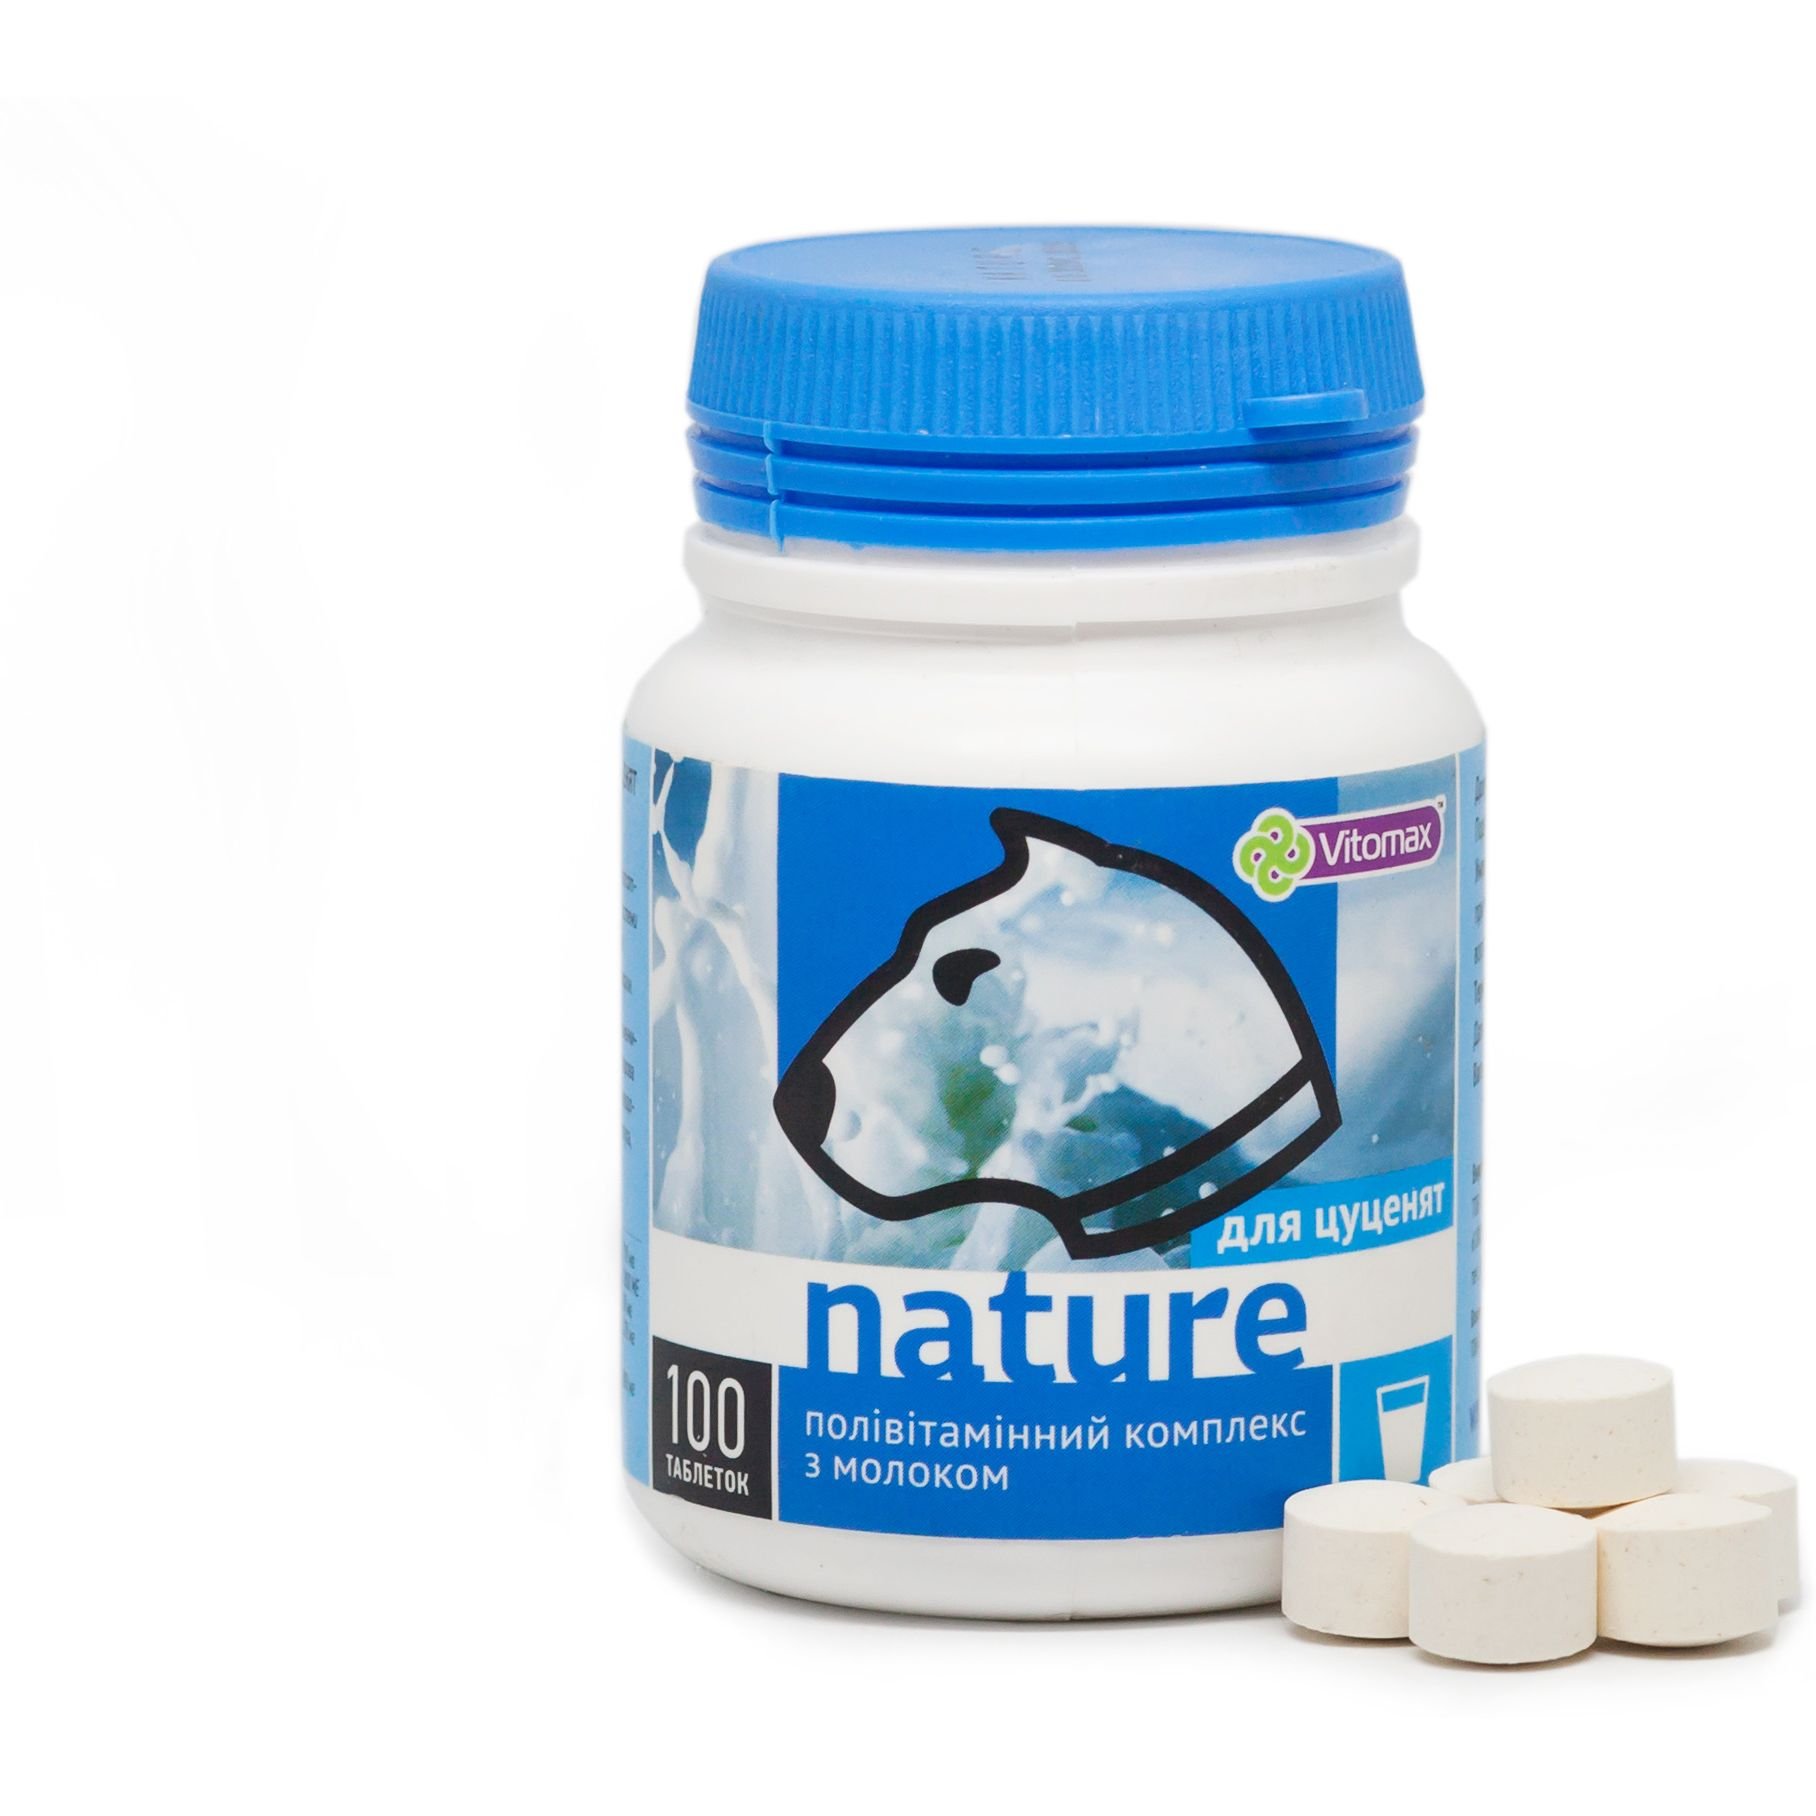 Полівітамінний комплекс Vitomax Nature для цуценят з молоком, 100 таблеток - фото 2